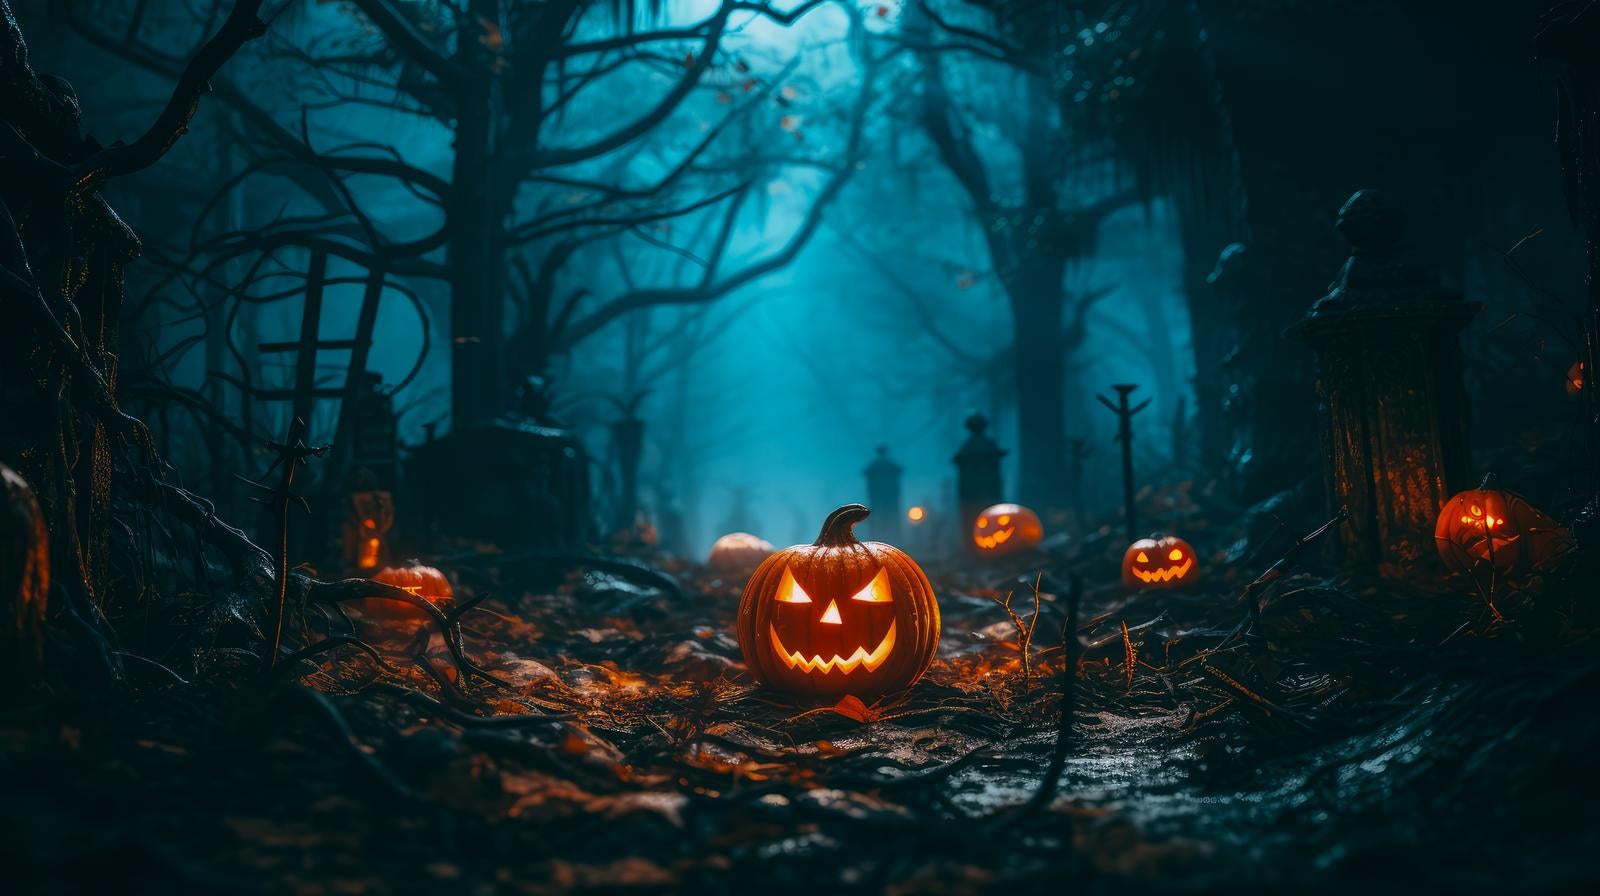 「かぼちゃのおばけに占拠された墓地」の写真